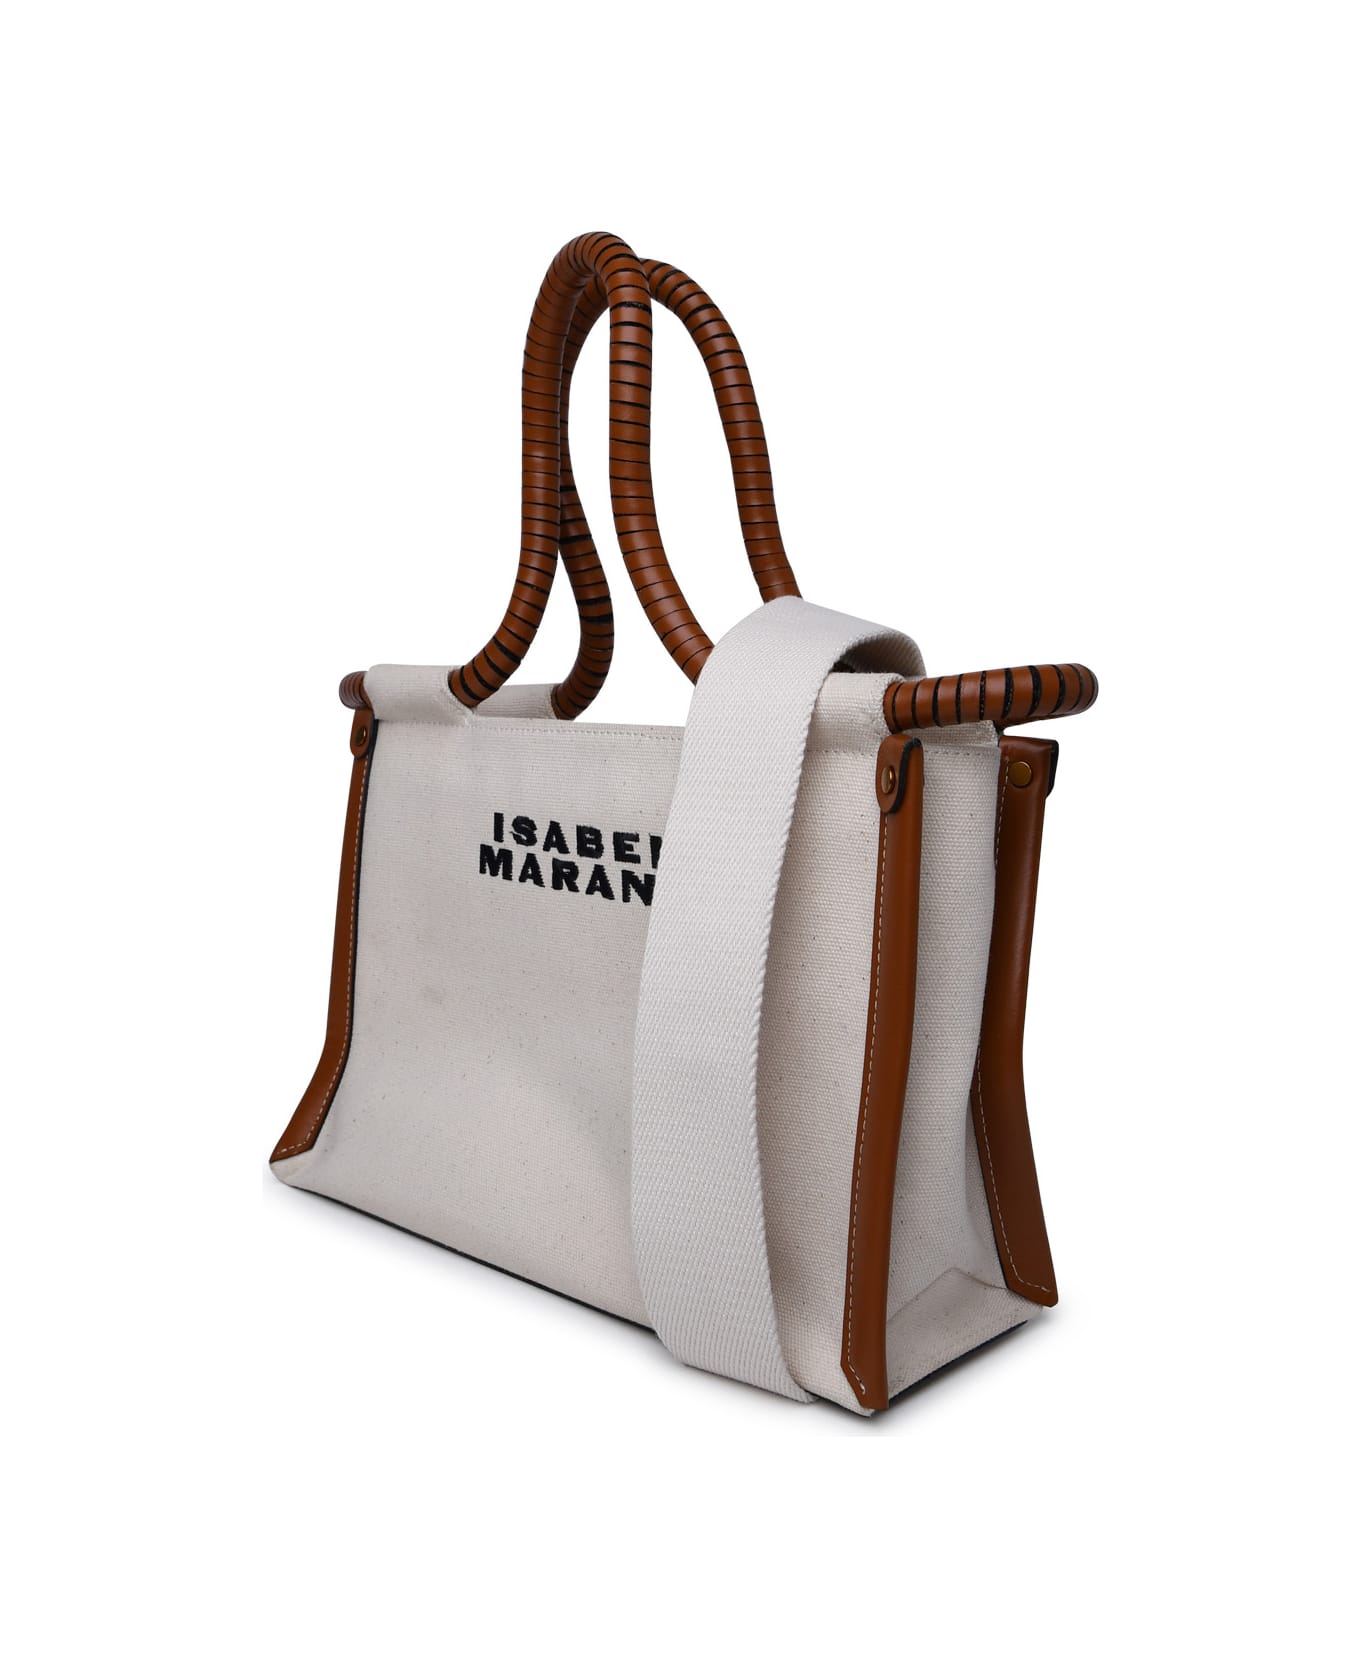 Isabel Marant Toledo Top Handle Bag - Beige トートバッグ